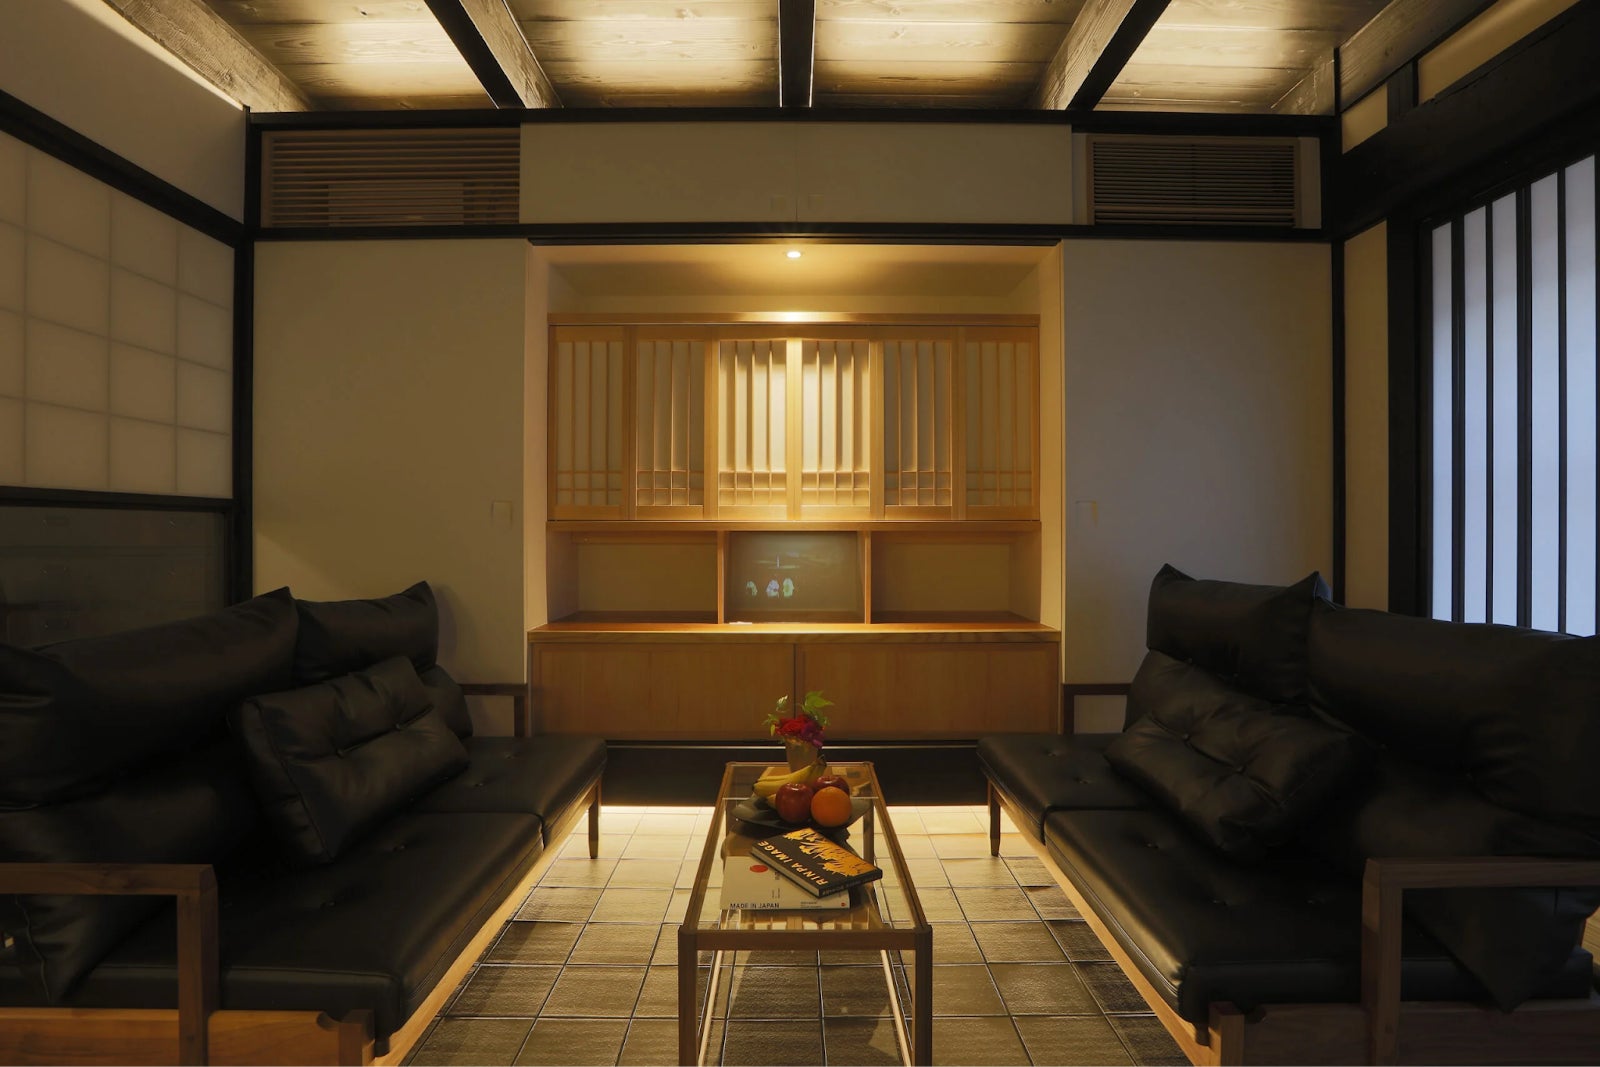 高級一棟貸し宿を手がけるMUDANI、京都・四条烏丸のアート町家宿「季楽 京都 凛葩」の運営をスタート